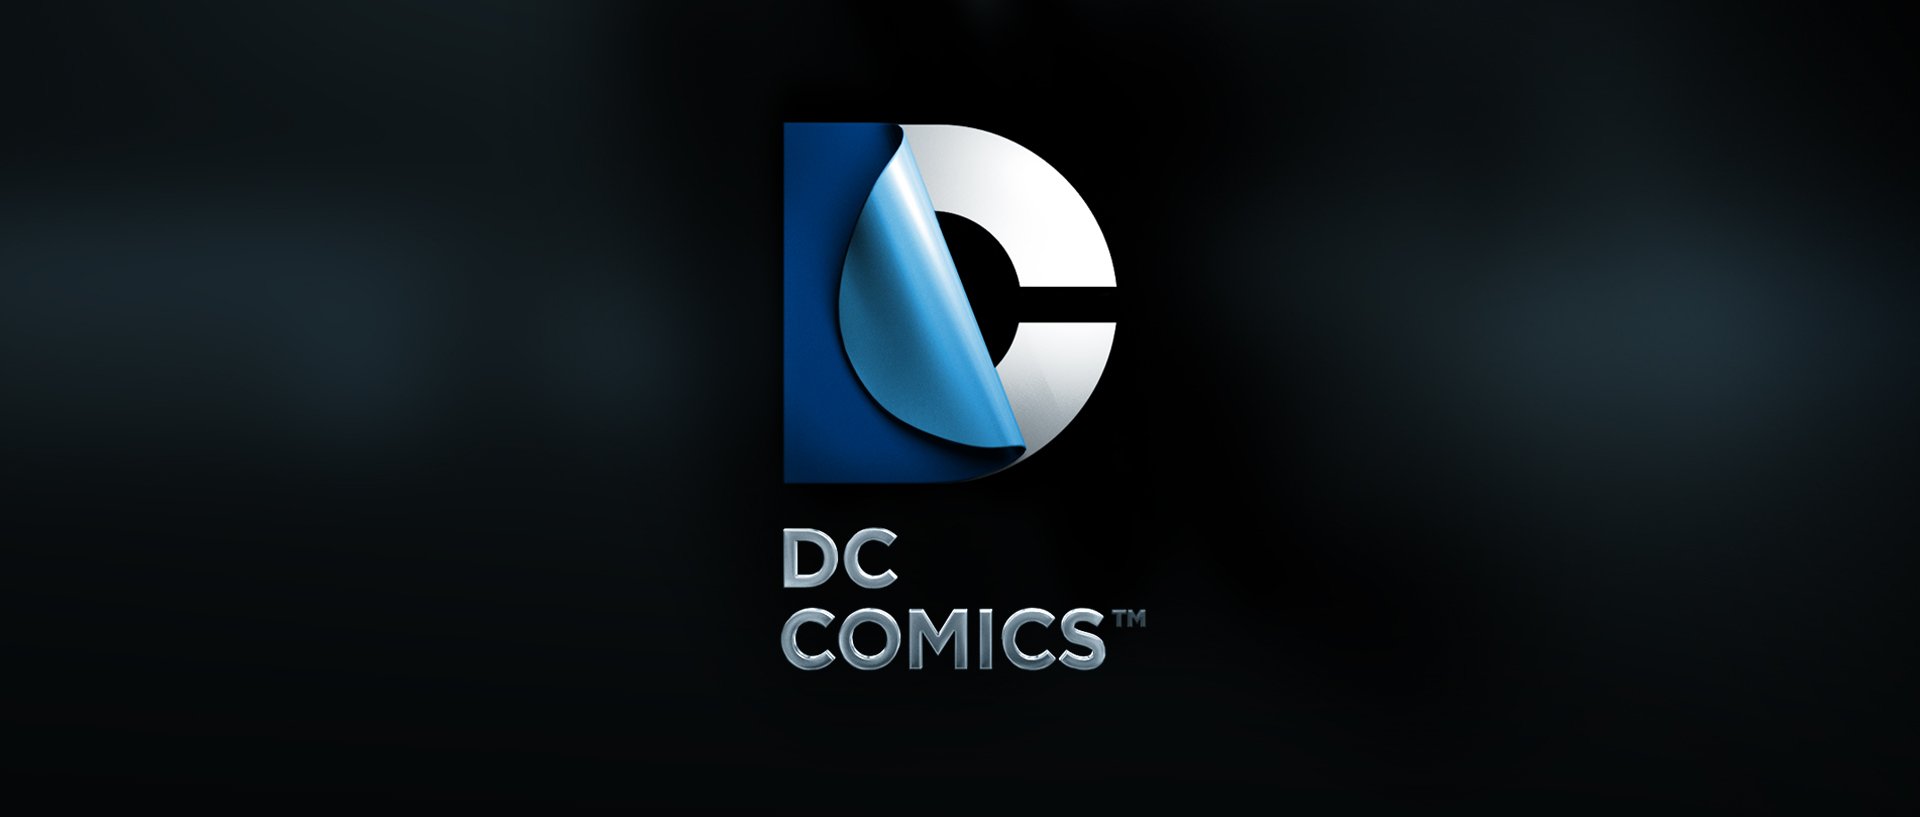 dc_logo.jpg